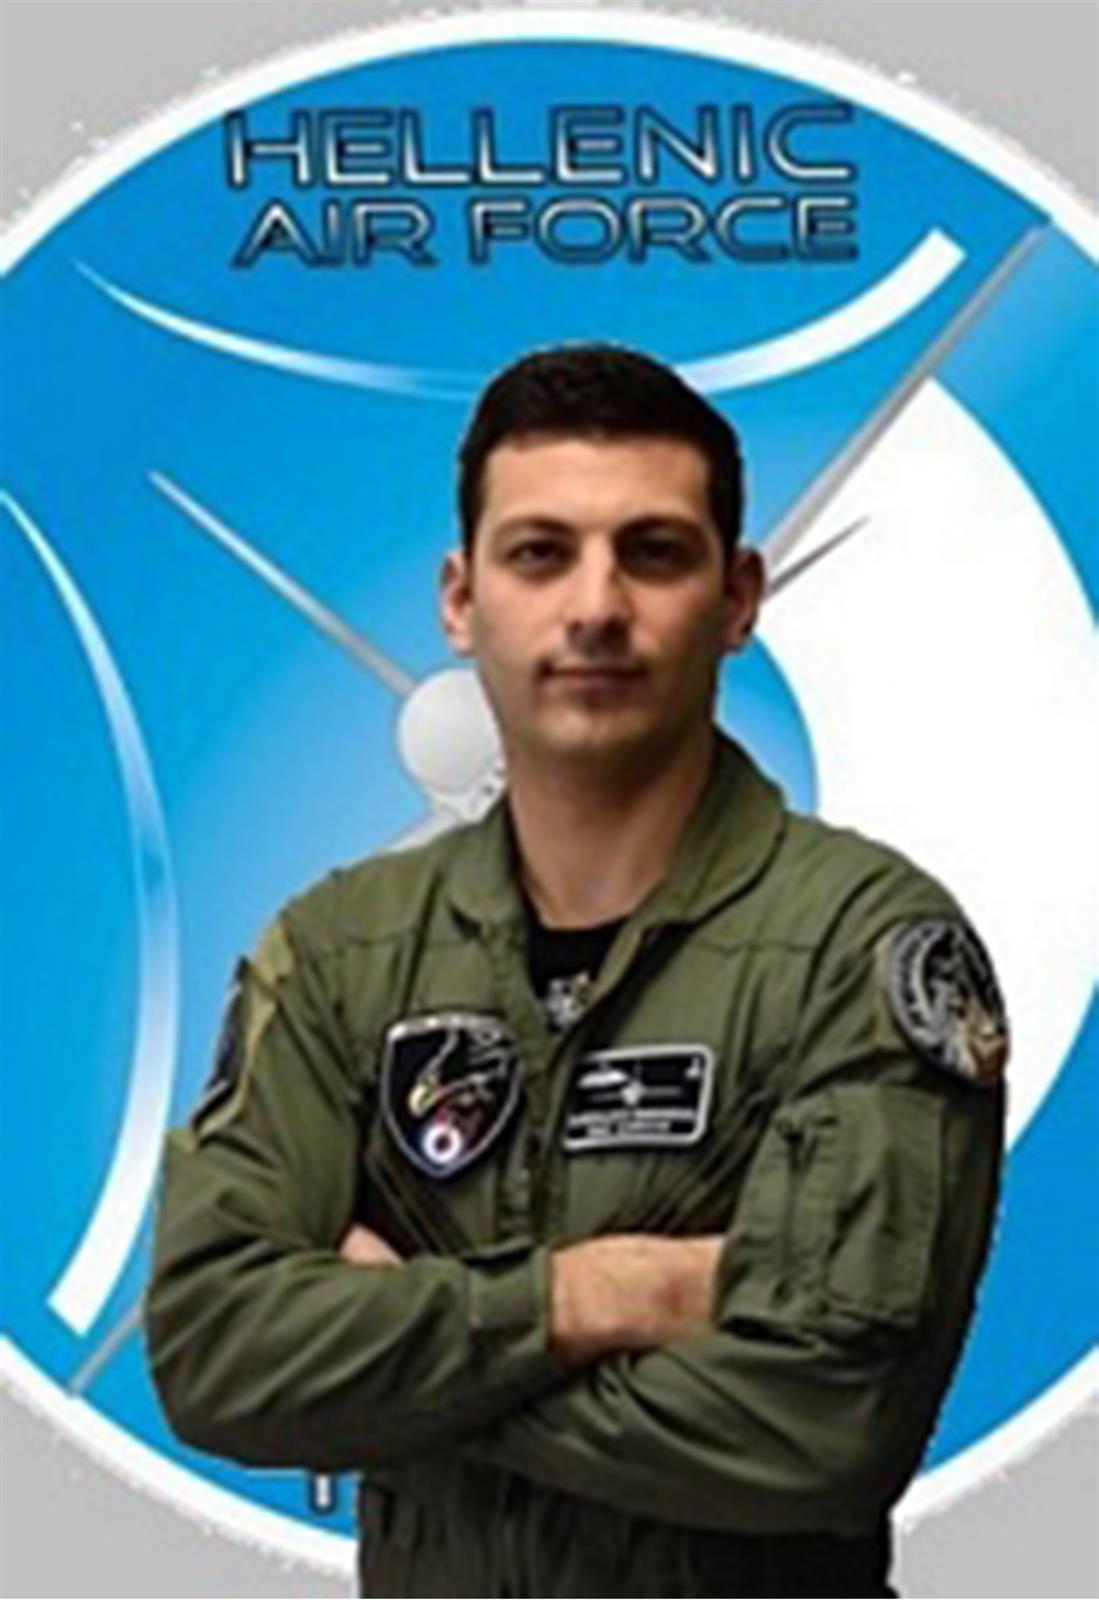 Μανώλης Γαρεφαλάκης - Τροχαίο δυστύχημα - Πιλότος στην Πολεμική αεροπορία - Κρήτη